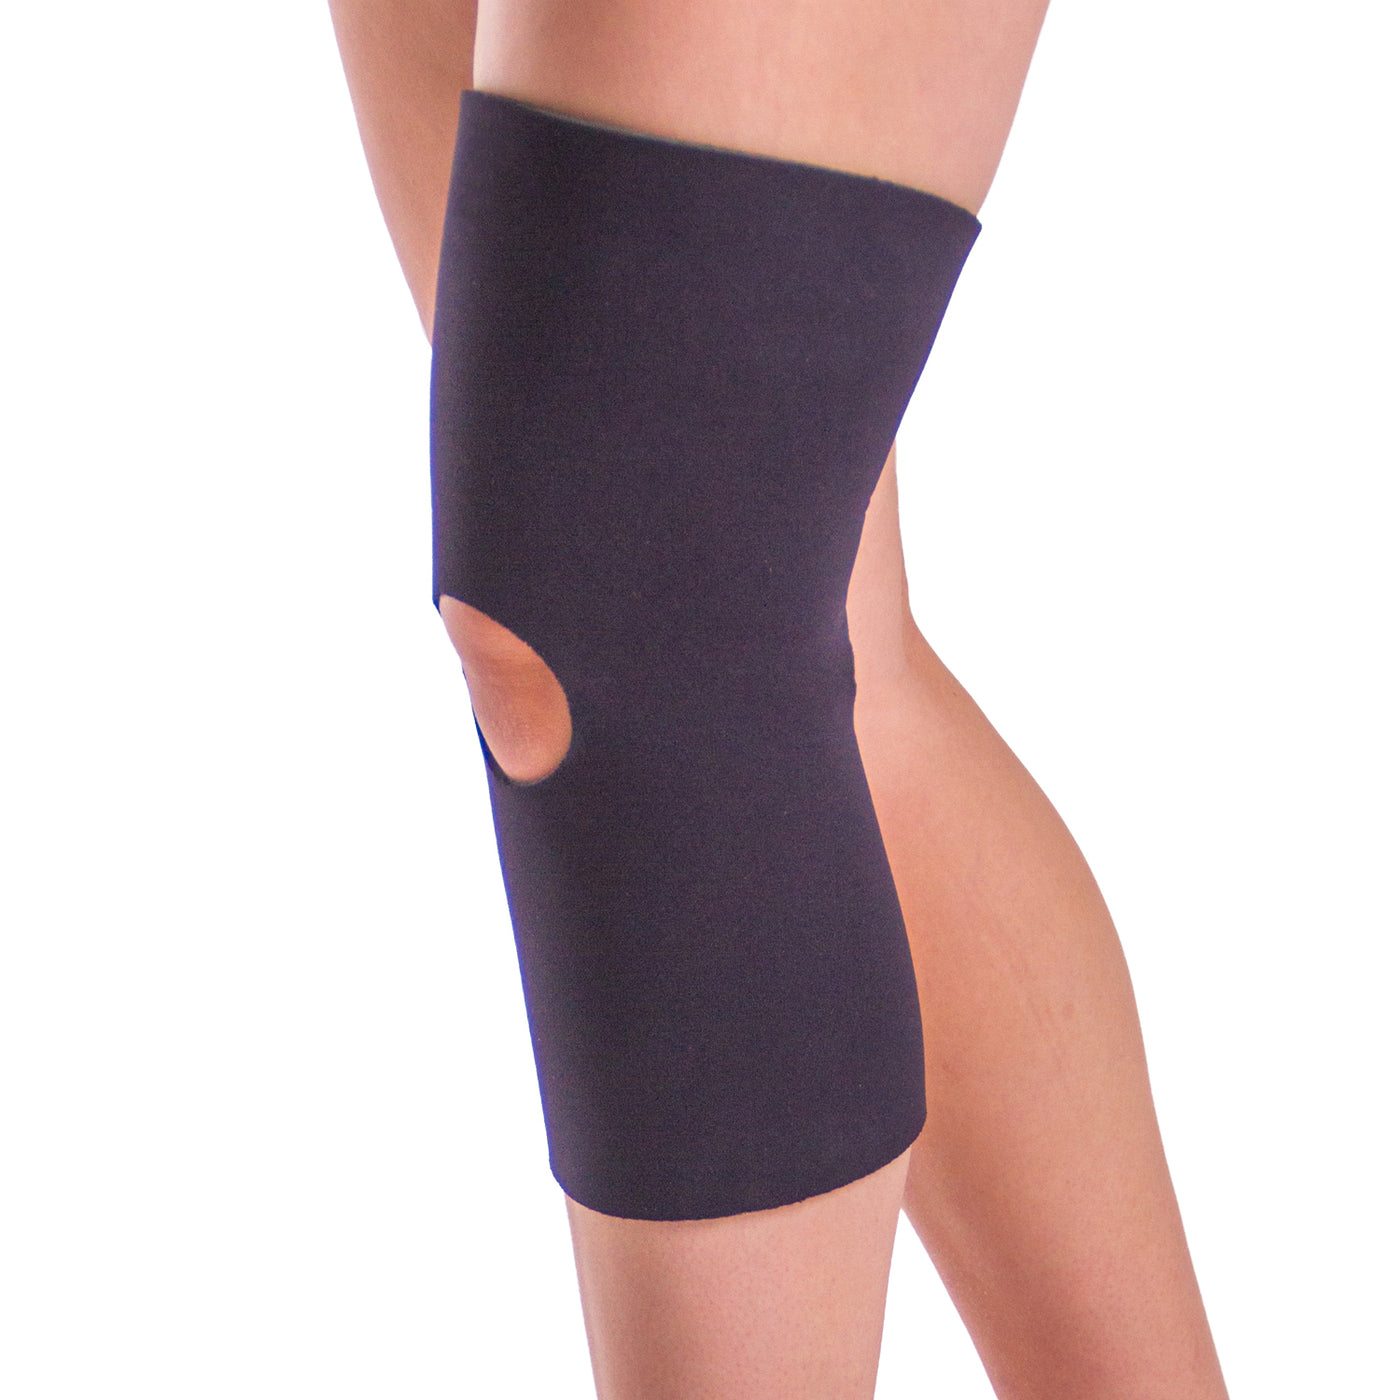 https://www.braceability.com/cdn/shop/products/03k0501-neoprene-open-patella-open-back-athletic-knee-sleeve_1400x.jpg?v=1614960202